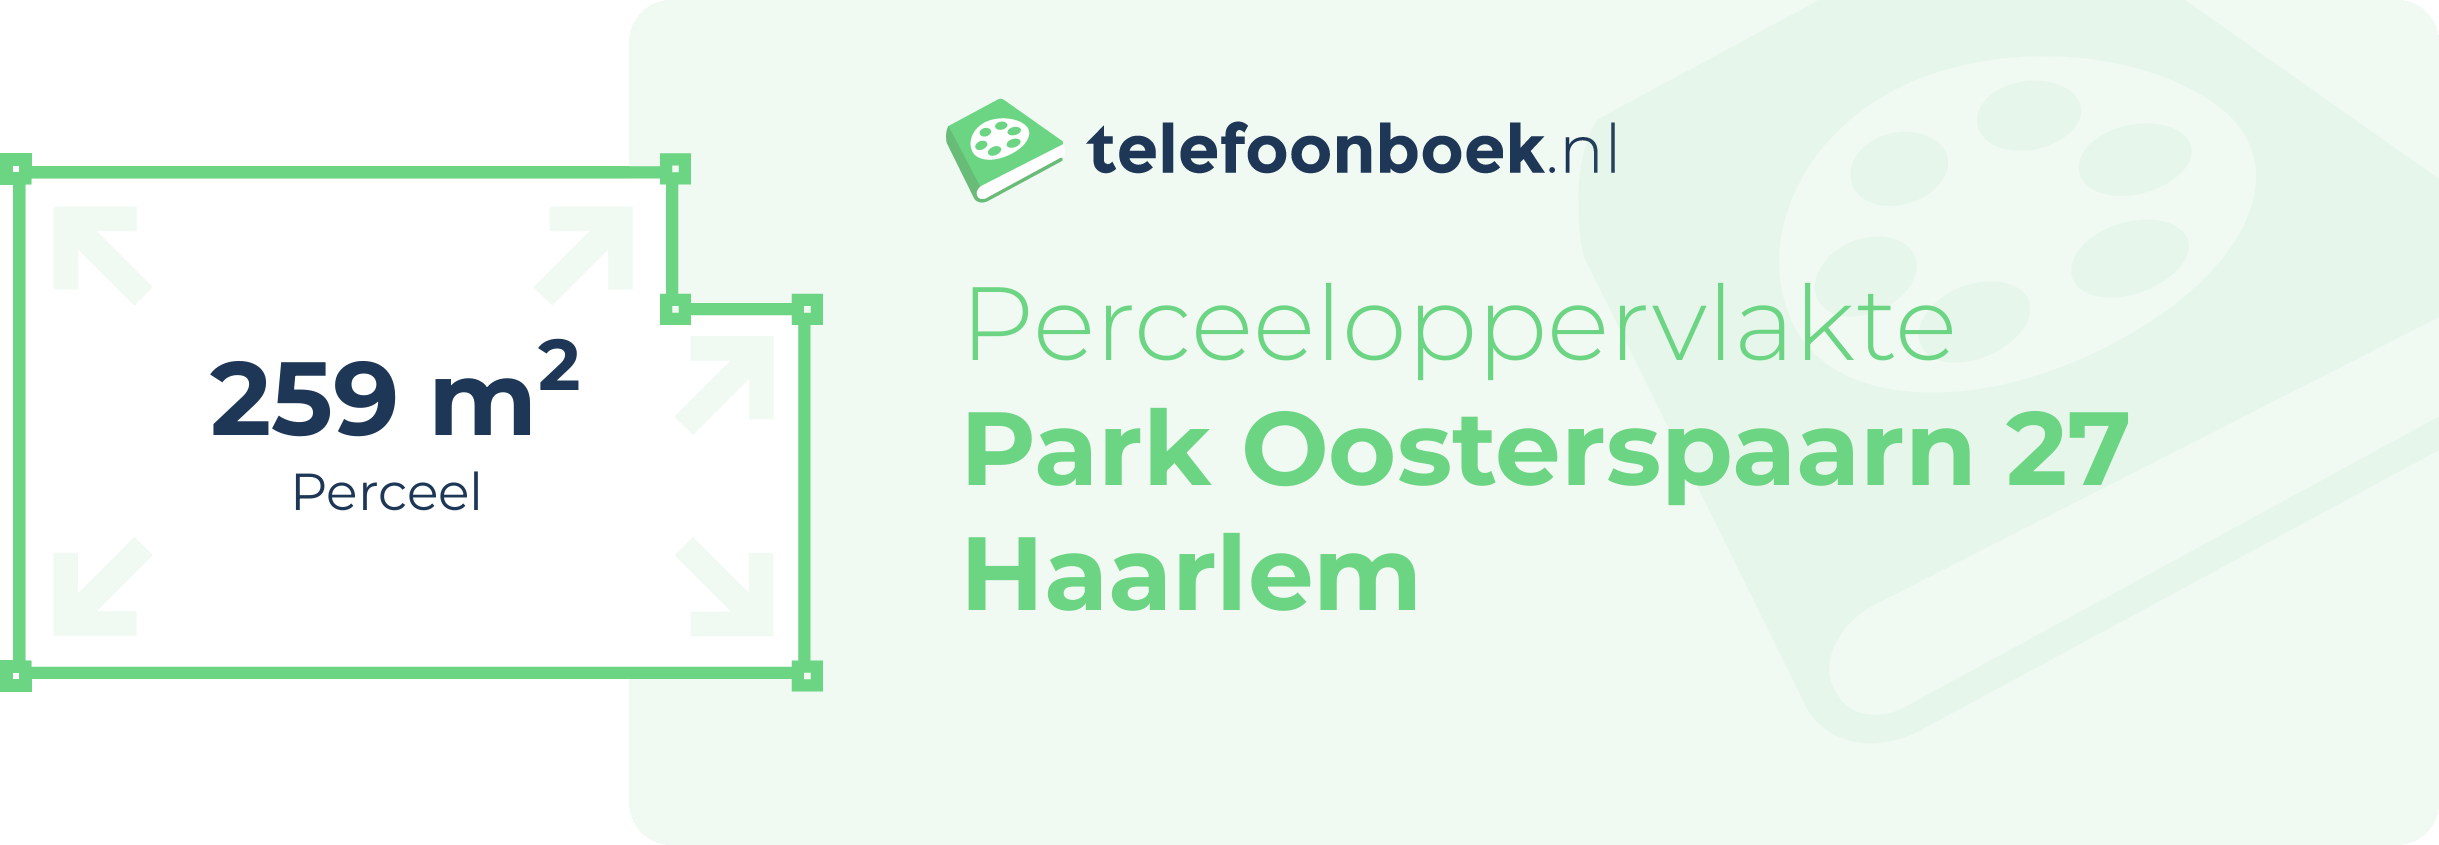 Perceeloppervlakte Park Oosterspaarn 27 Haarlem